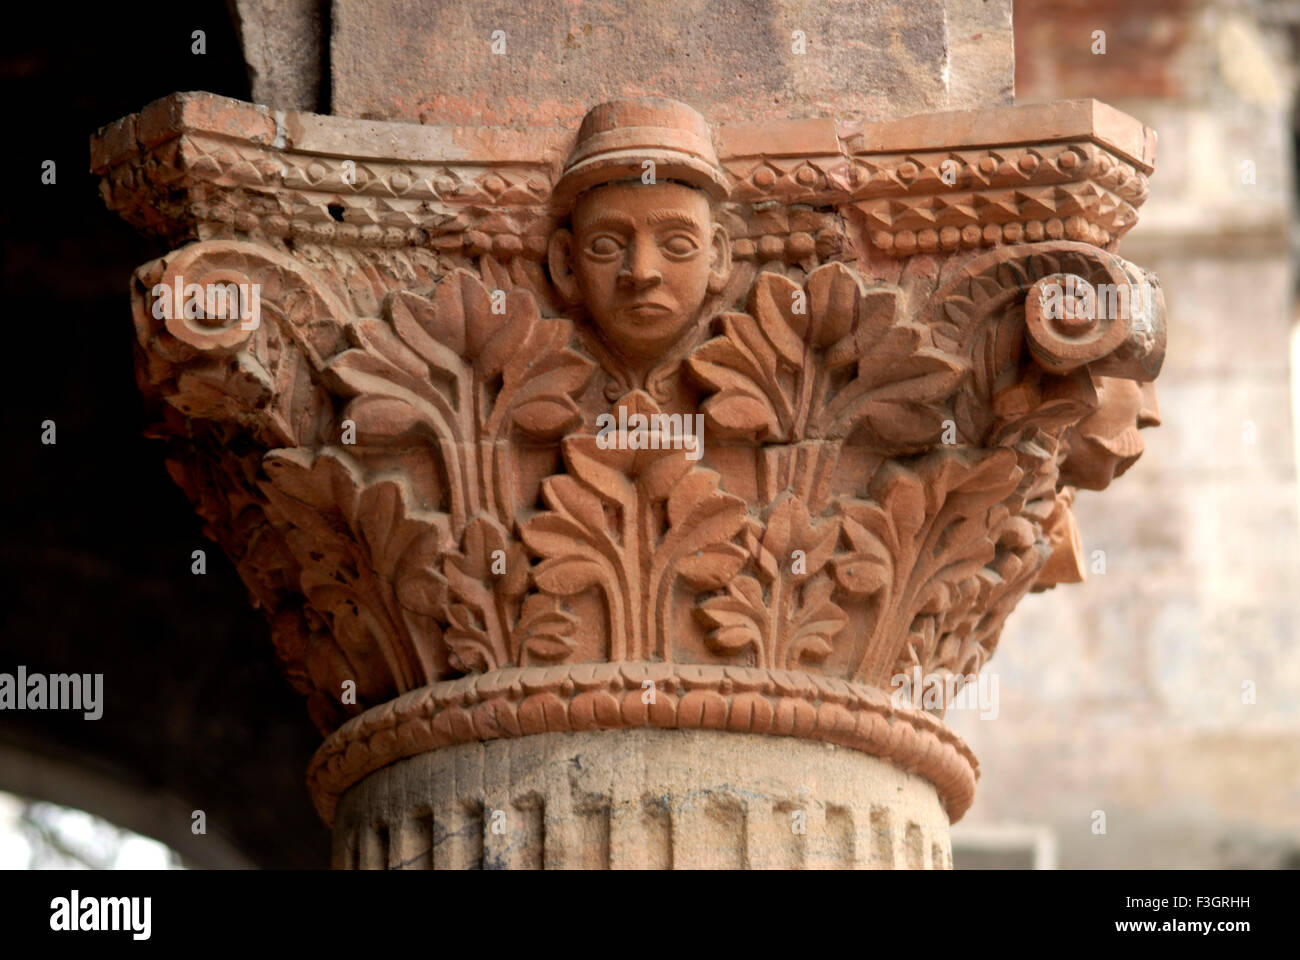 Cara de inglés hombre tallado en pilar decorativo del viejo palacio de Indore, Madhya Pradesh, India ; Foto de stock